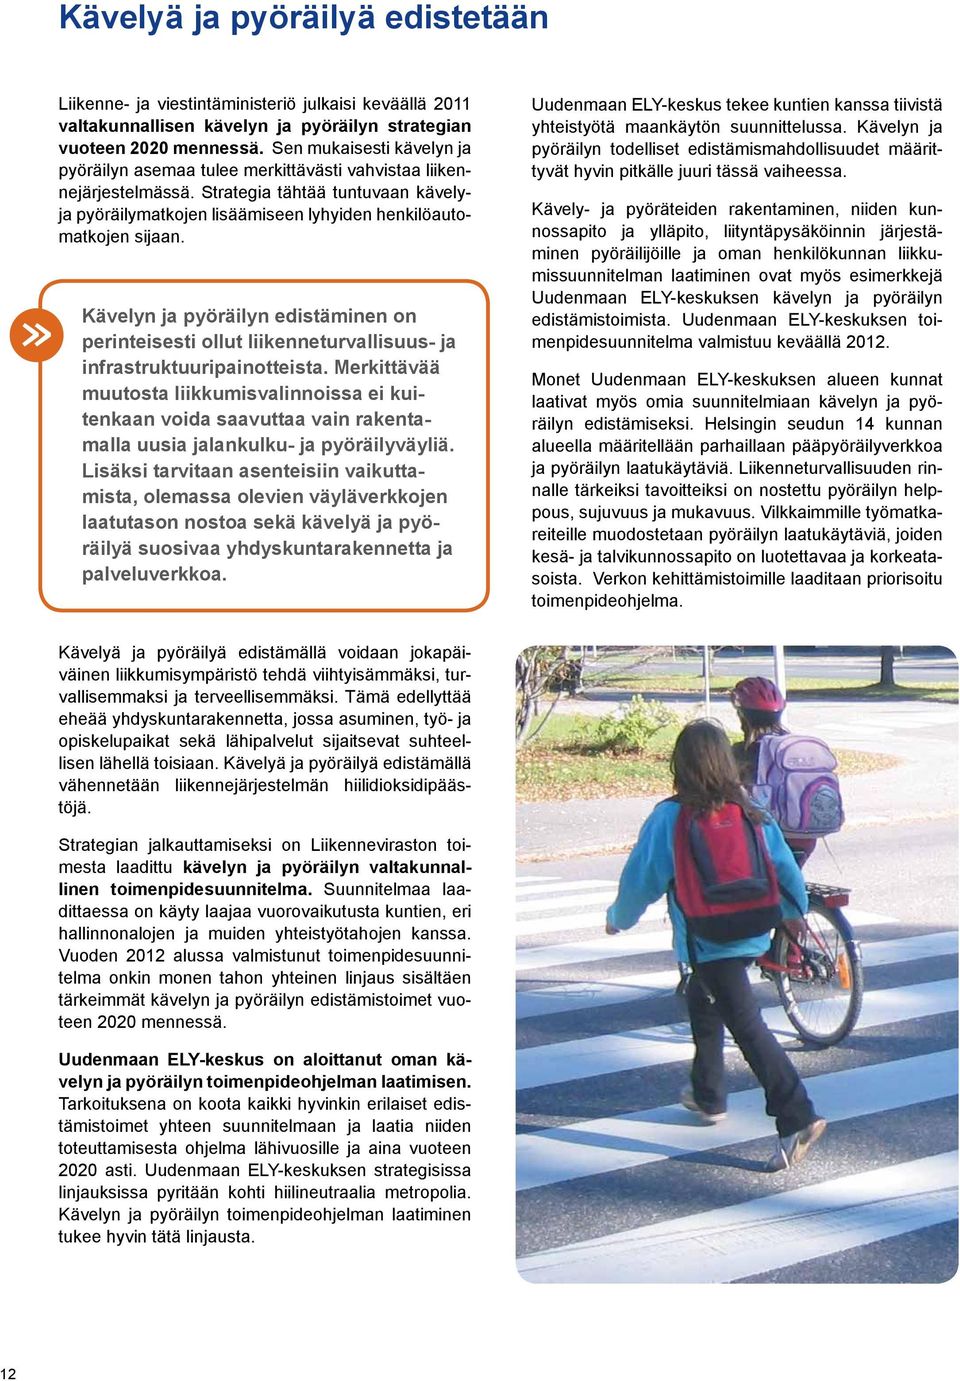 Kävelyn ja pyöräilyn edistäminen on perinteisesti ollut liikenneturvallisuus- ja infrastruktuuripainotteista.